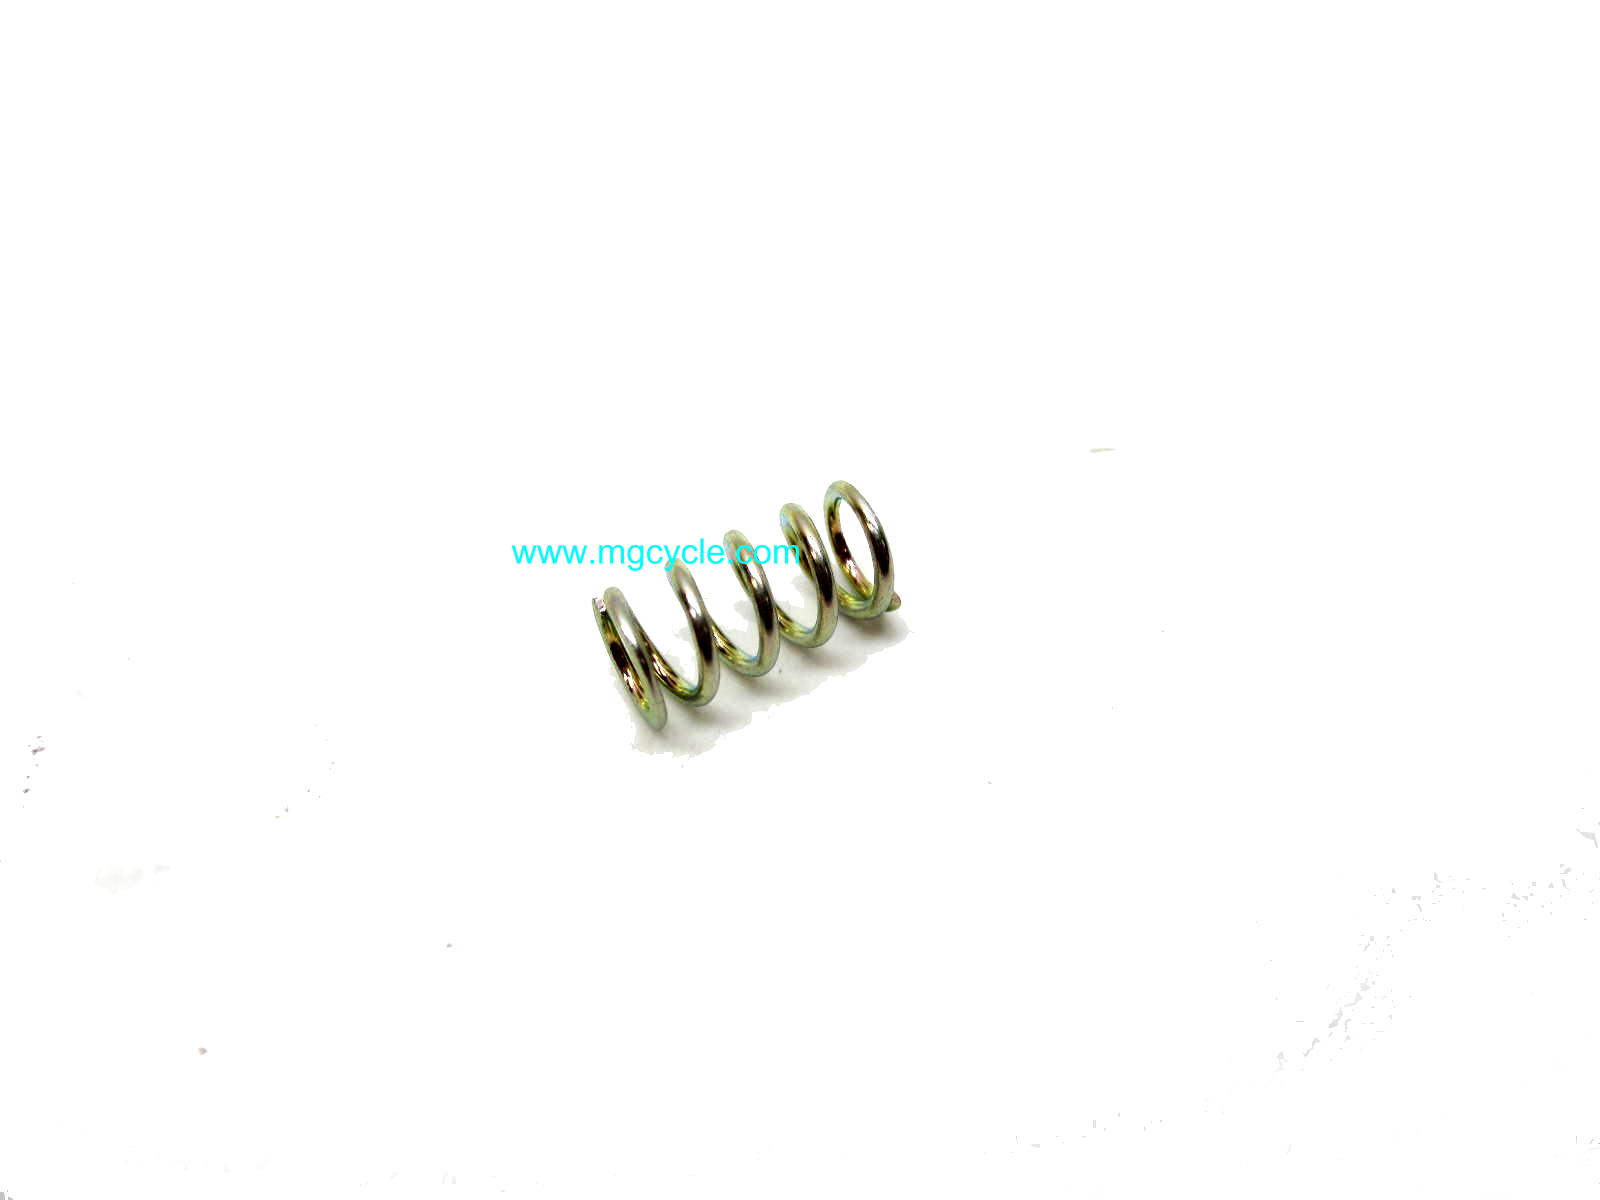 Dellorto 4670 idle screw adjuster spring 13936700